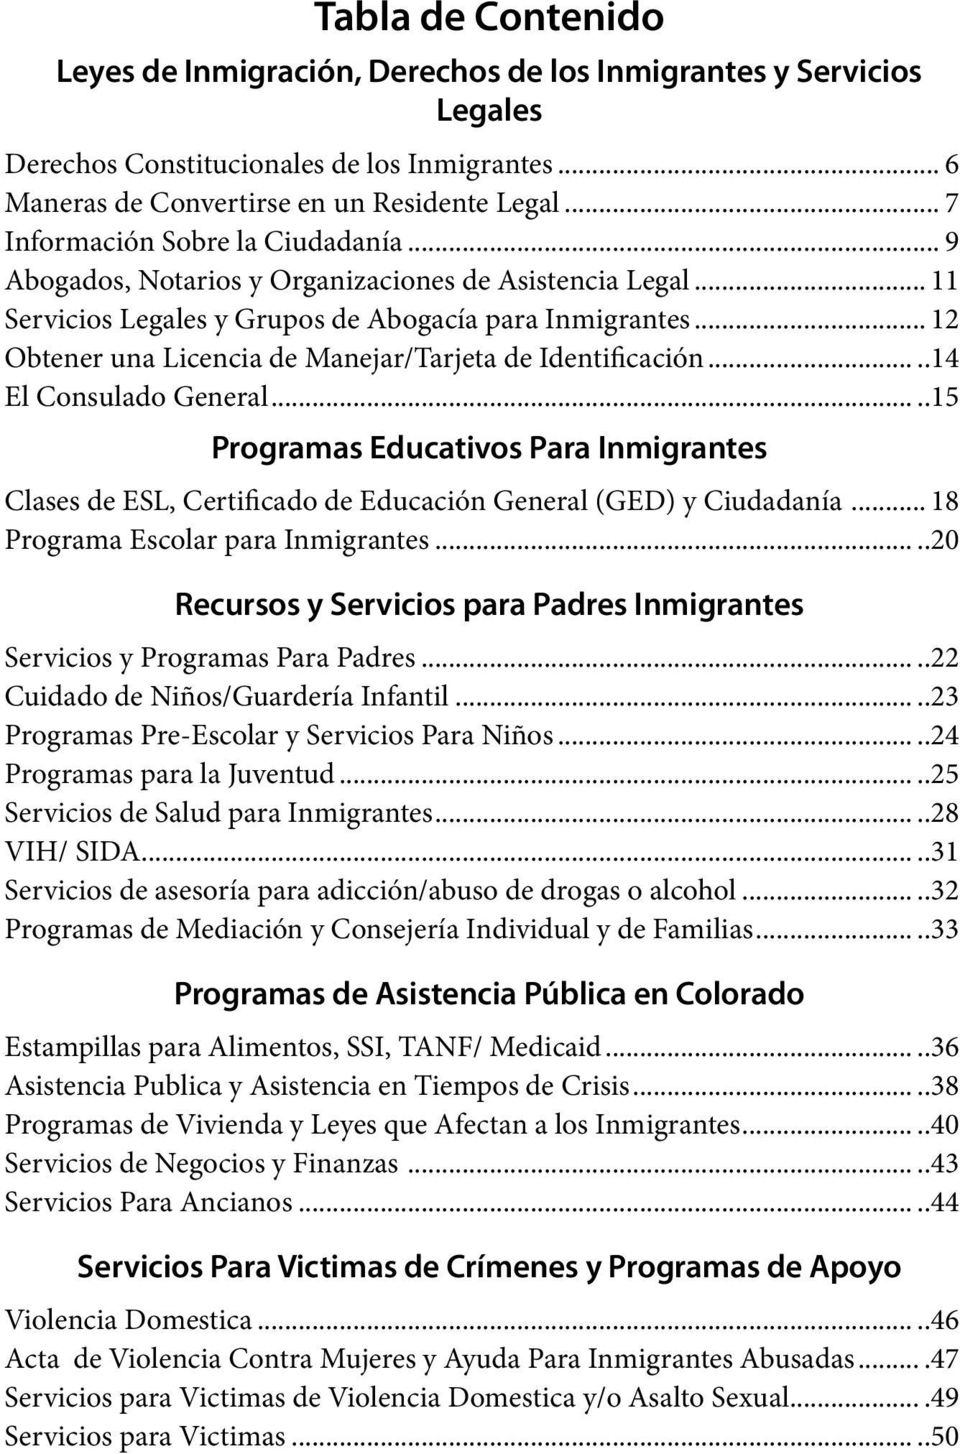 .. 12 Obtener una Licencia de Manejar/Tarjeta de Identificación.....14 El Consulado General.....15 Programas Educativos Para Inmigrantes Clases de ESL, Certificado de Educación General (GED) y Ciudadanía.